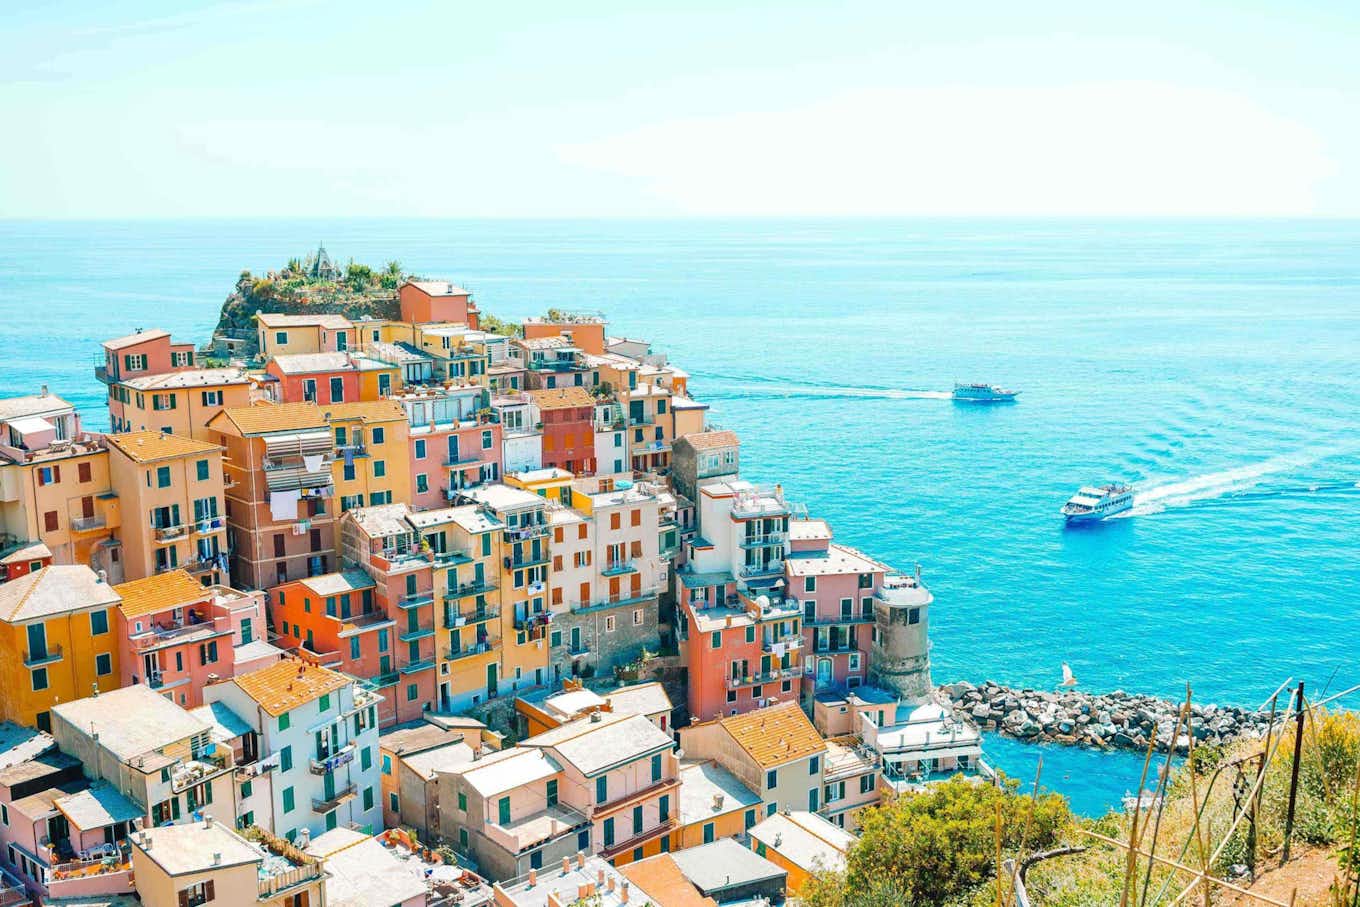 La città e le case colorate a Cinque Terre